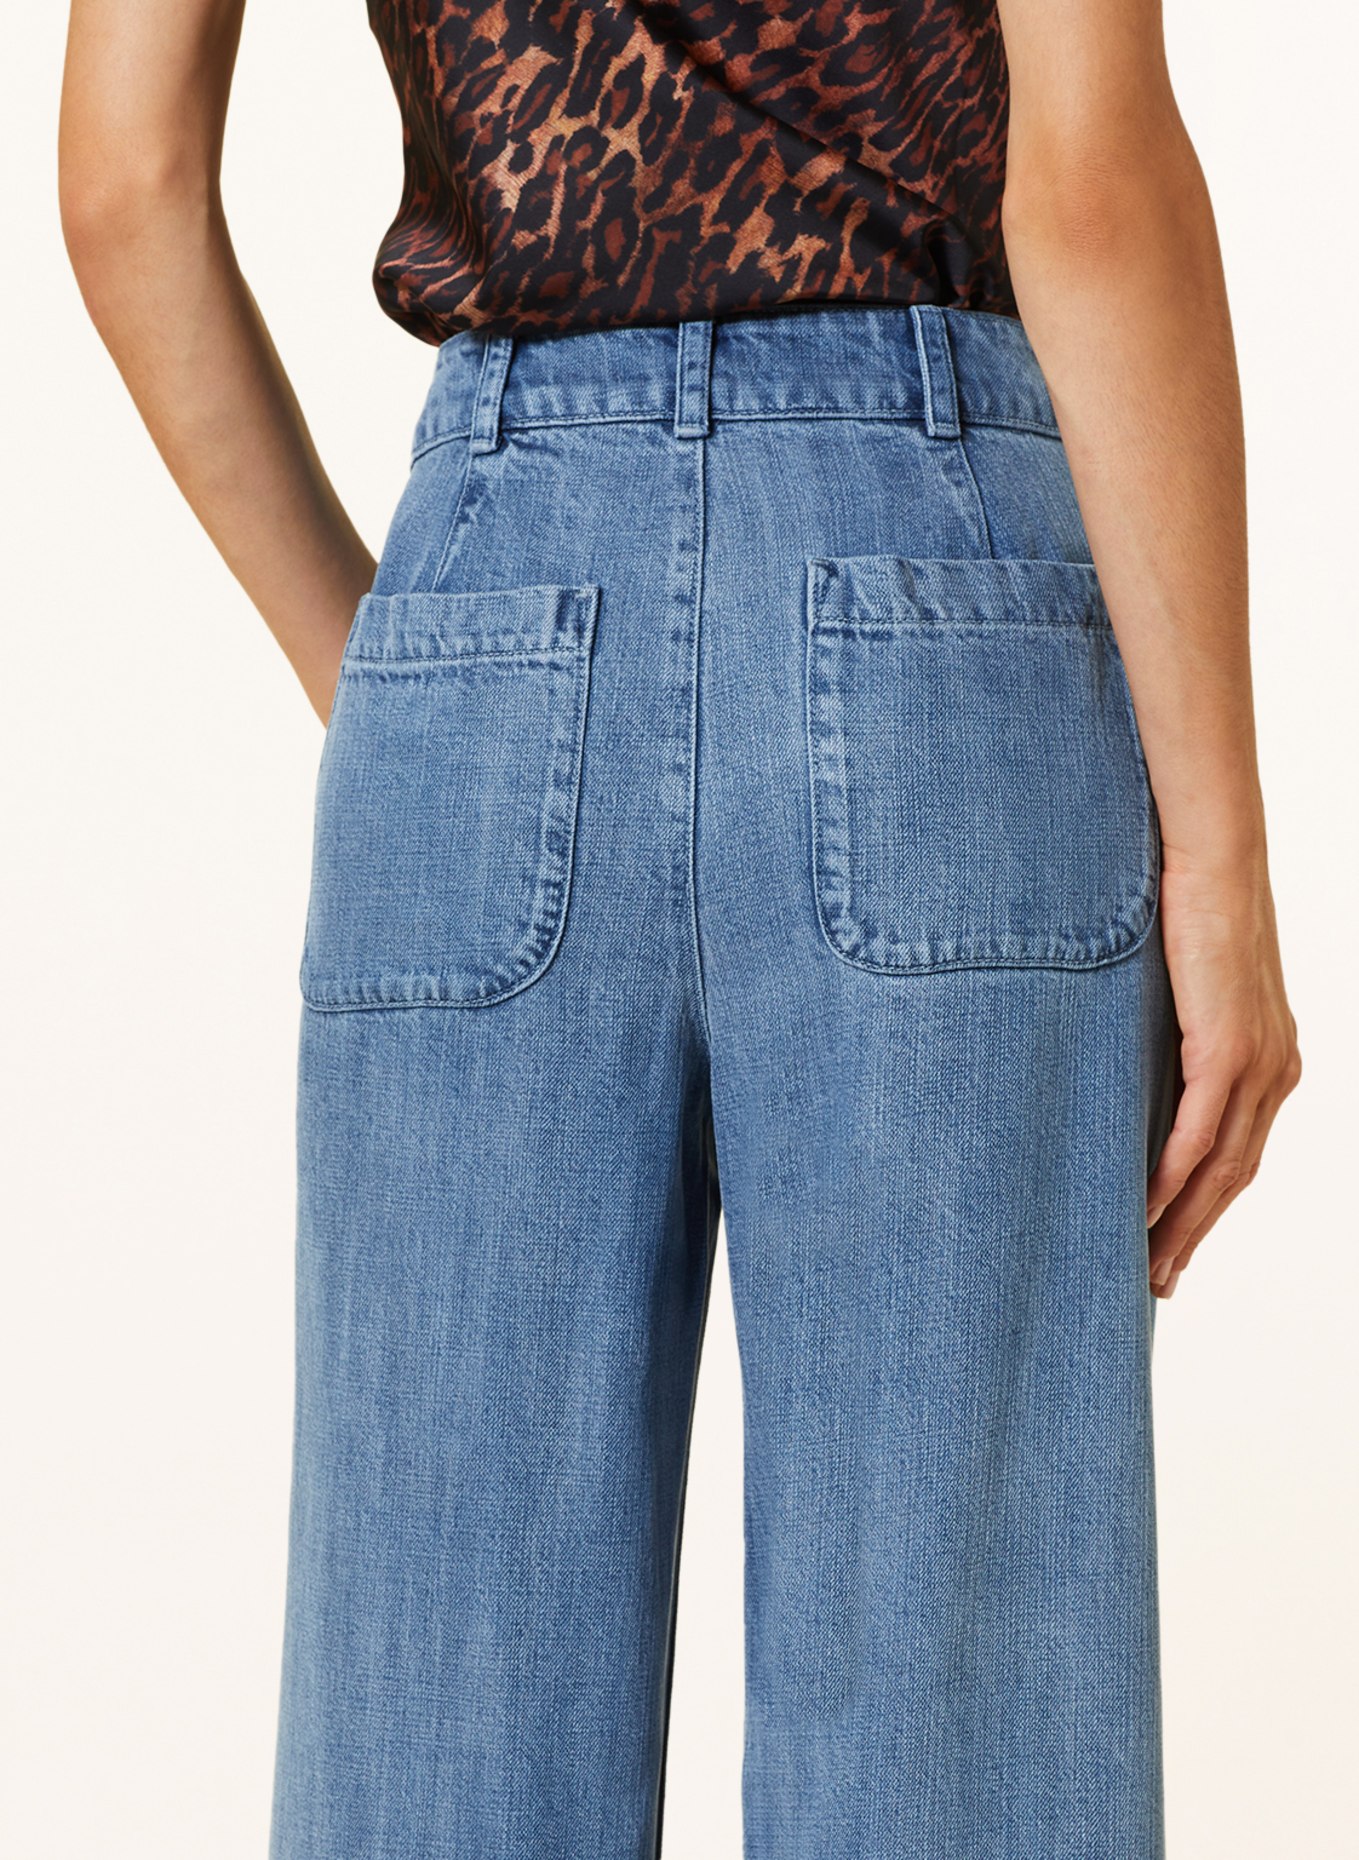 bella dahl Flared jeans, Color: 2023364 VINTAGE STREAKY WASH (Image 5)